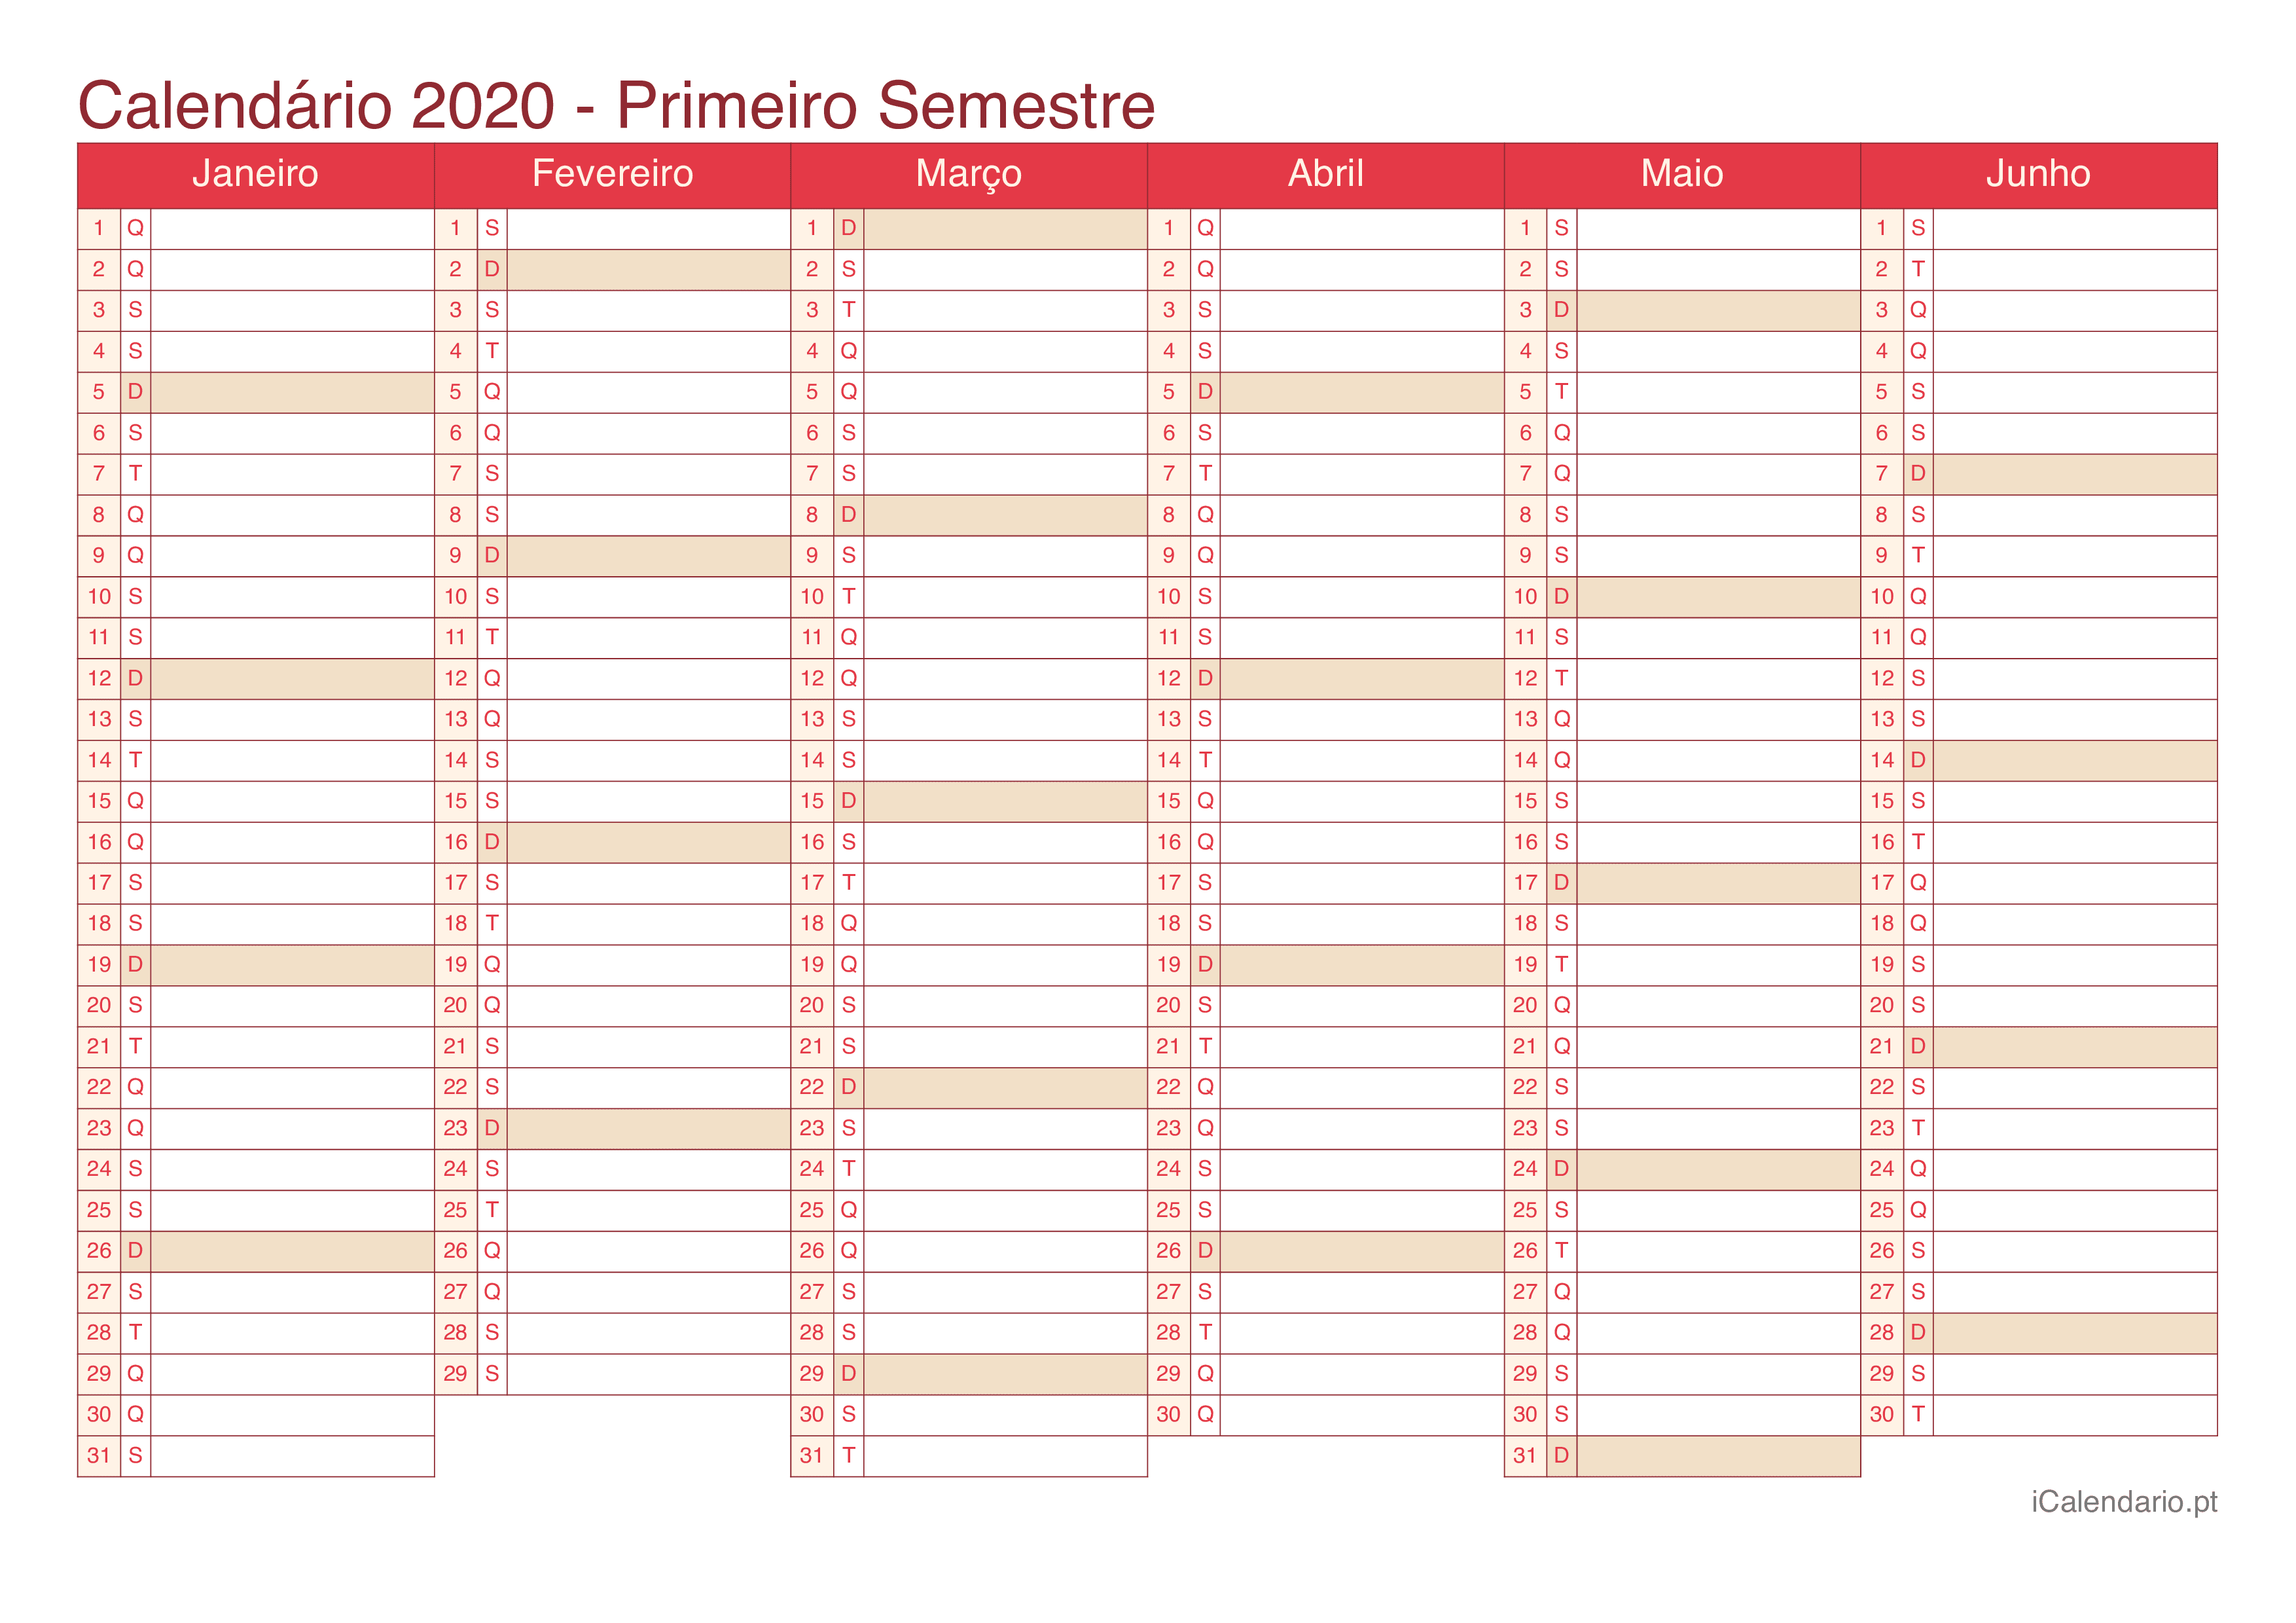 Calendário por semestre 2020 - Cherry